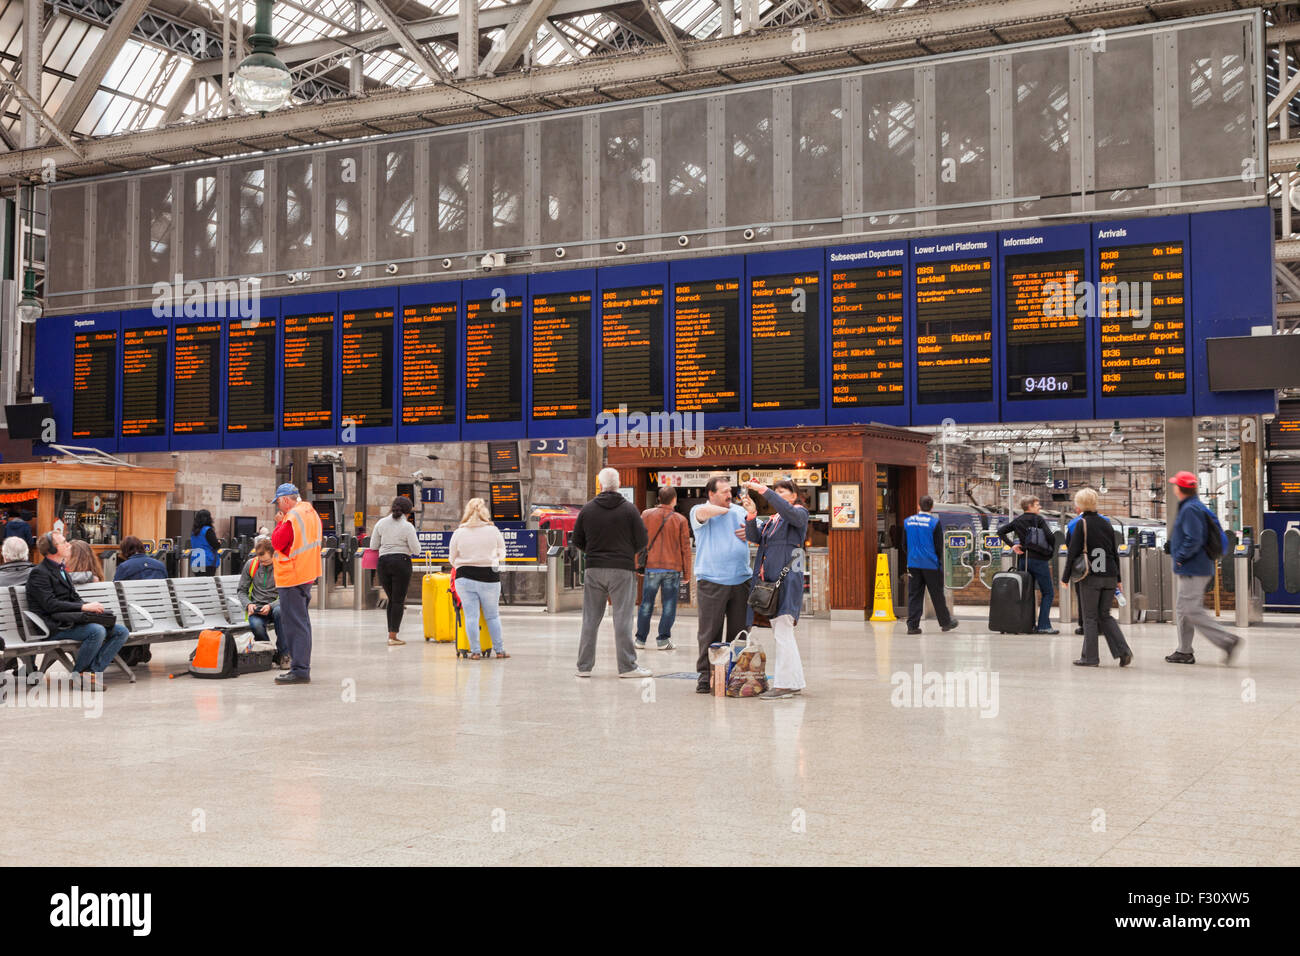 Bahnhofshalle und Abfahrtstafel, Hauptbahnhof Glasgow, Glasgow, Schottland, UK. Stockfoto